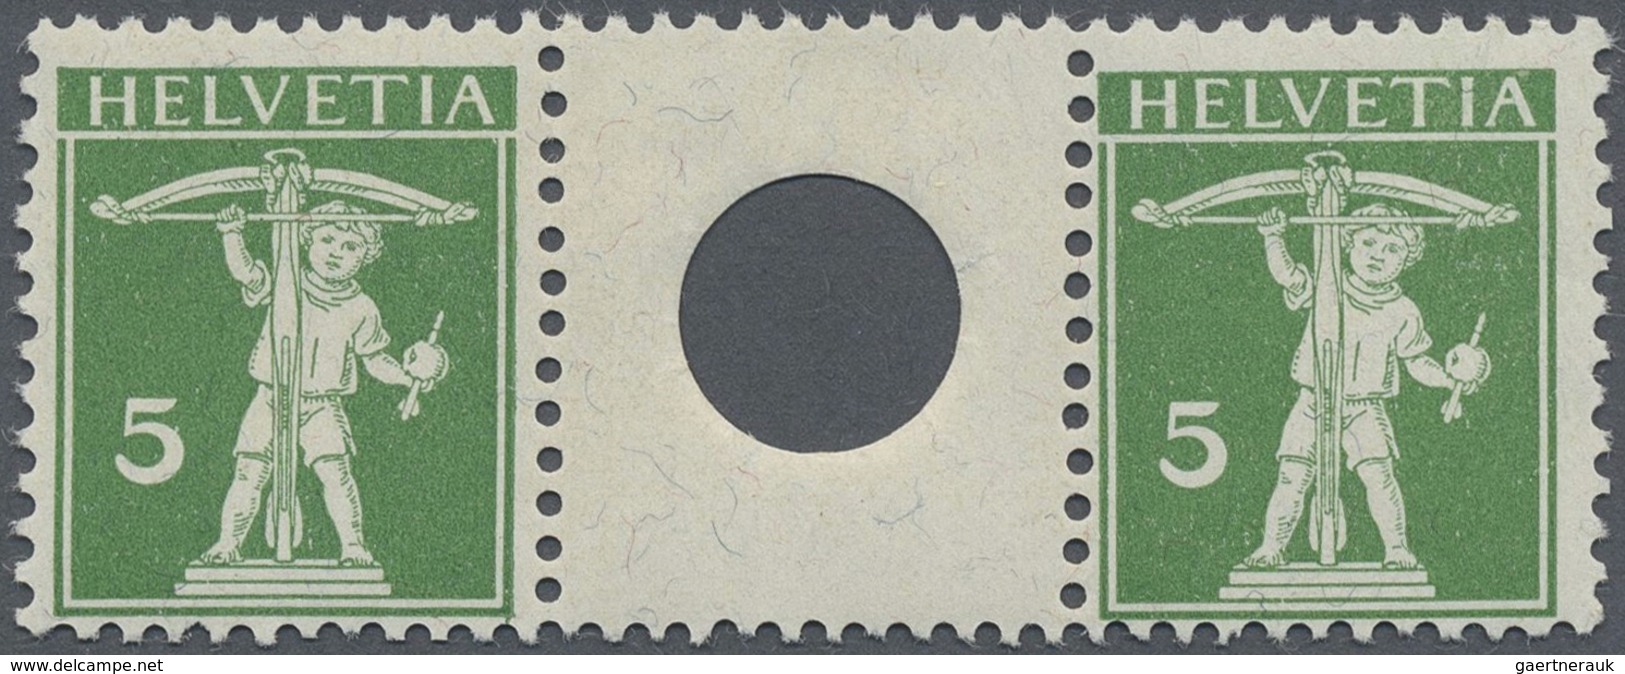 ** Schweiz - Zusammendrucke: 1909-11 Tell 5 Rp. Grün In Type II Im Zwischenstegpaar Mit Großer Lochung, - Se-Tenant